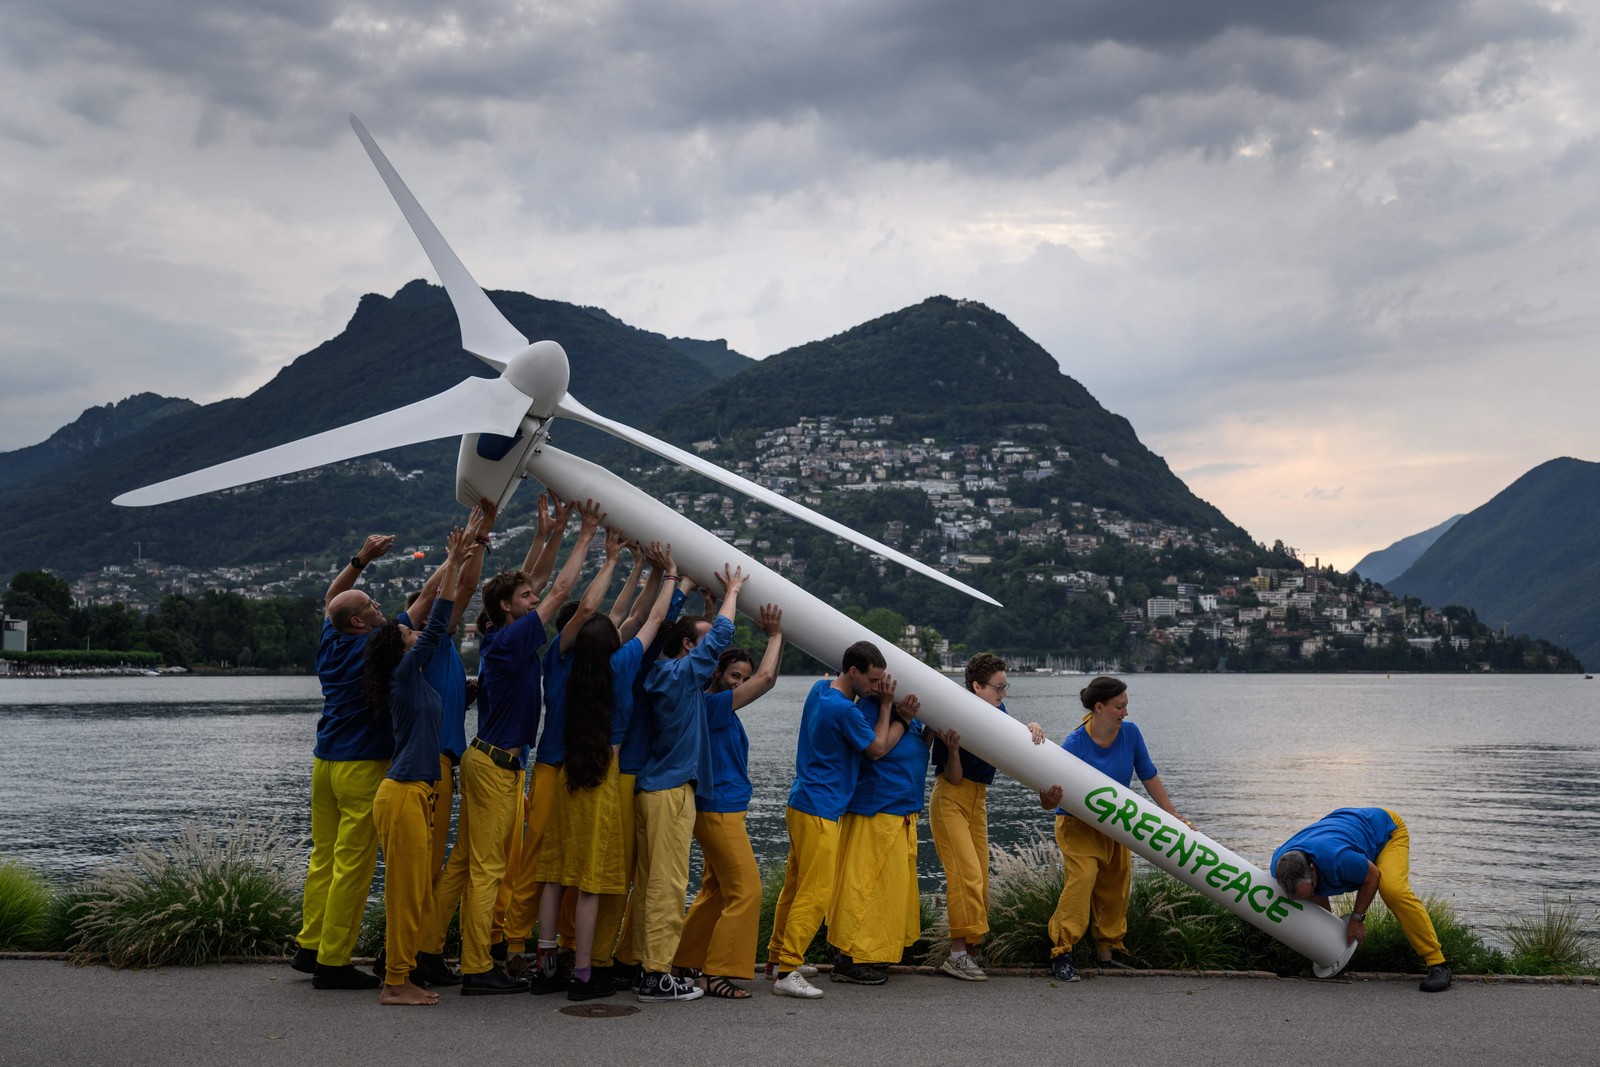 Ativistas do Greenpeace levantam uma turbina eólica na beira do Lago Lugano durante manifestação para pedir reconstrução sustentável da Ucrânia, antes de uma Conferência de Recuperação da Ucrânia de dois dias, em Lugano — Foto: FABRICE COFFRINI / AFP